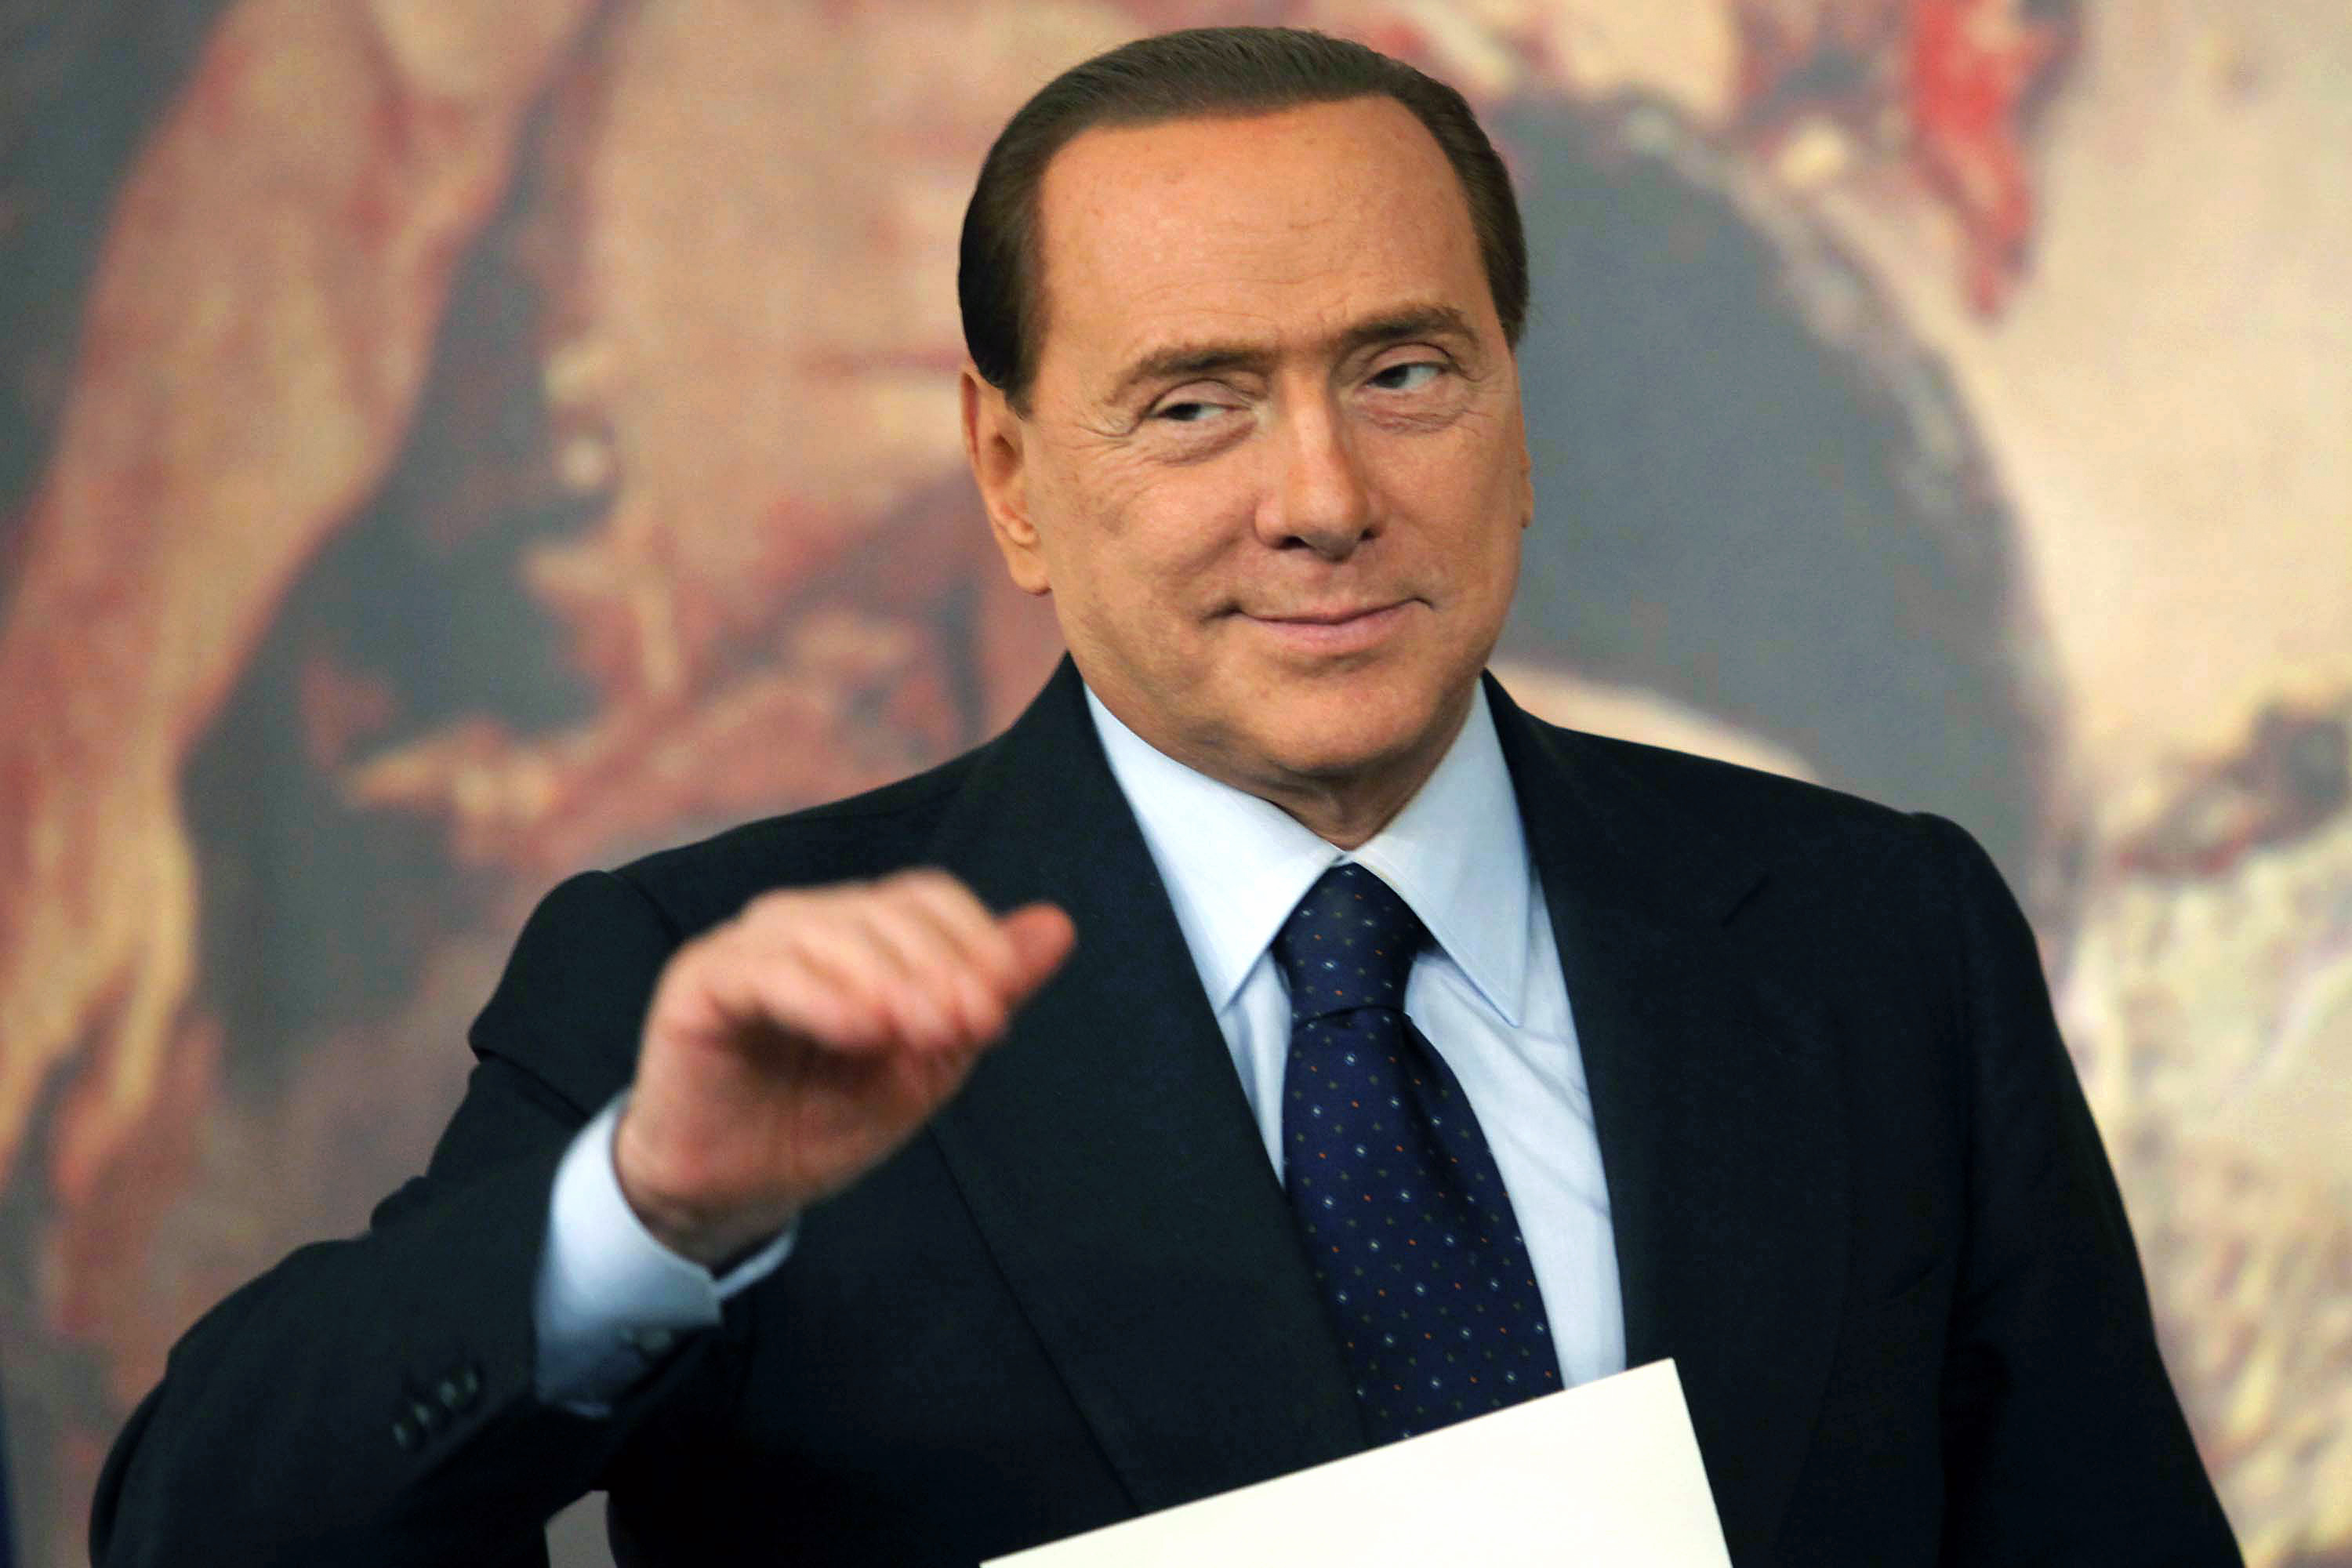 Silvio Berlusconi, Flicka, Köp av sexuell tjänst, Italien, Berlusconi